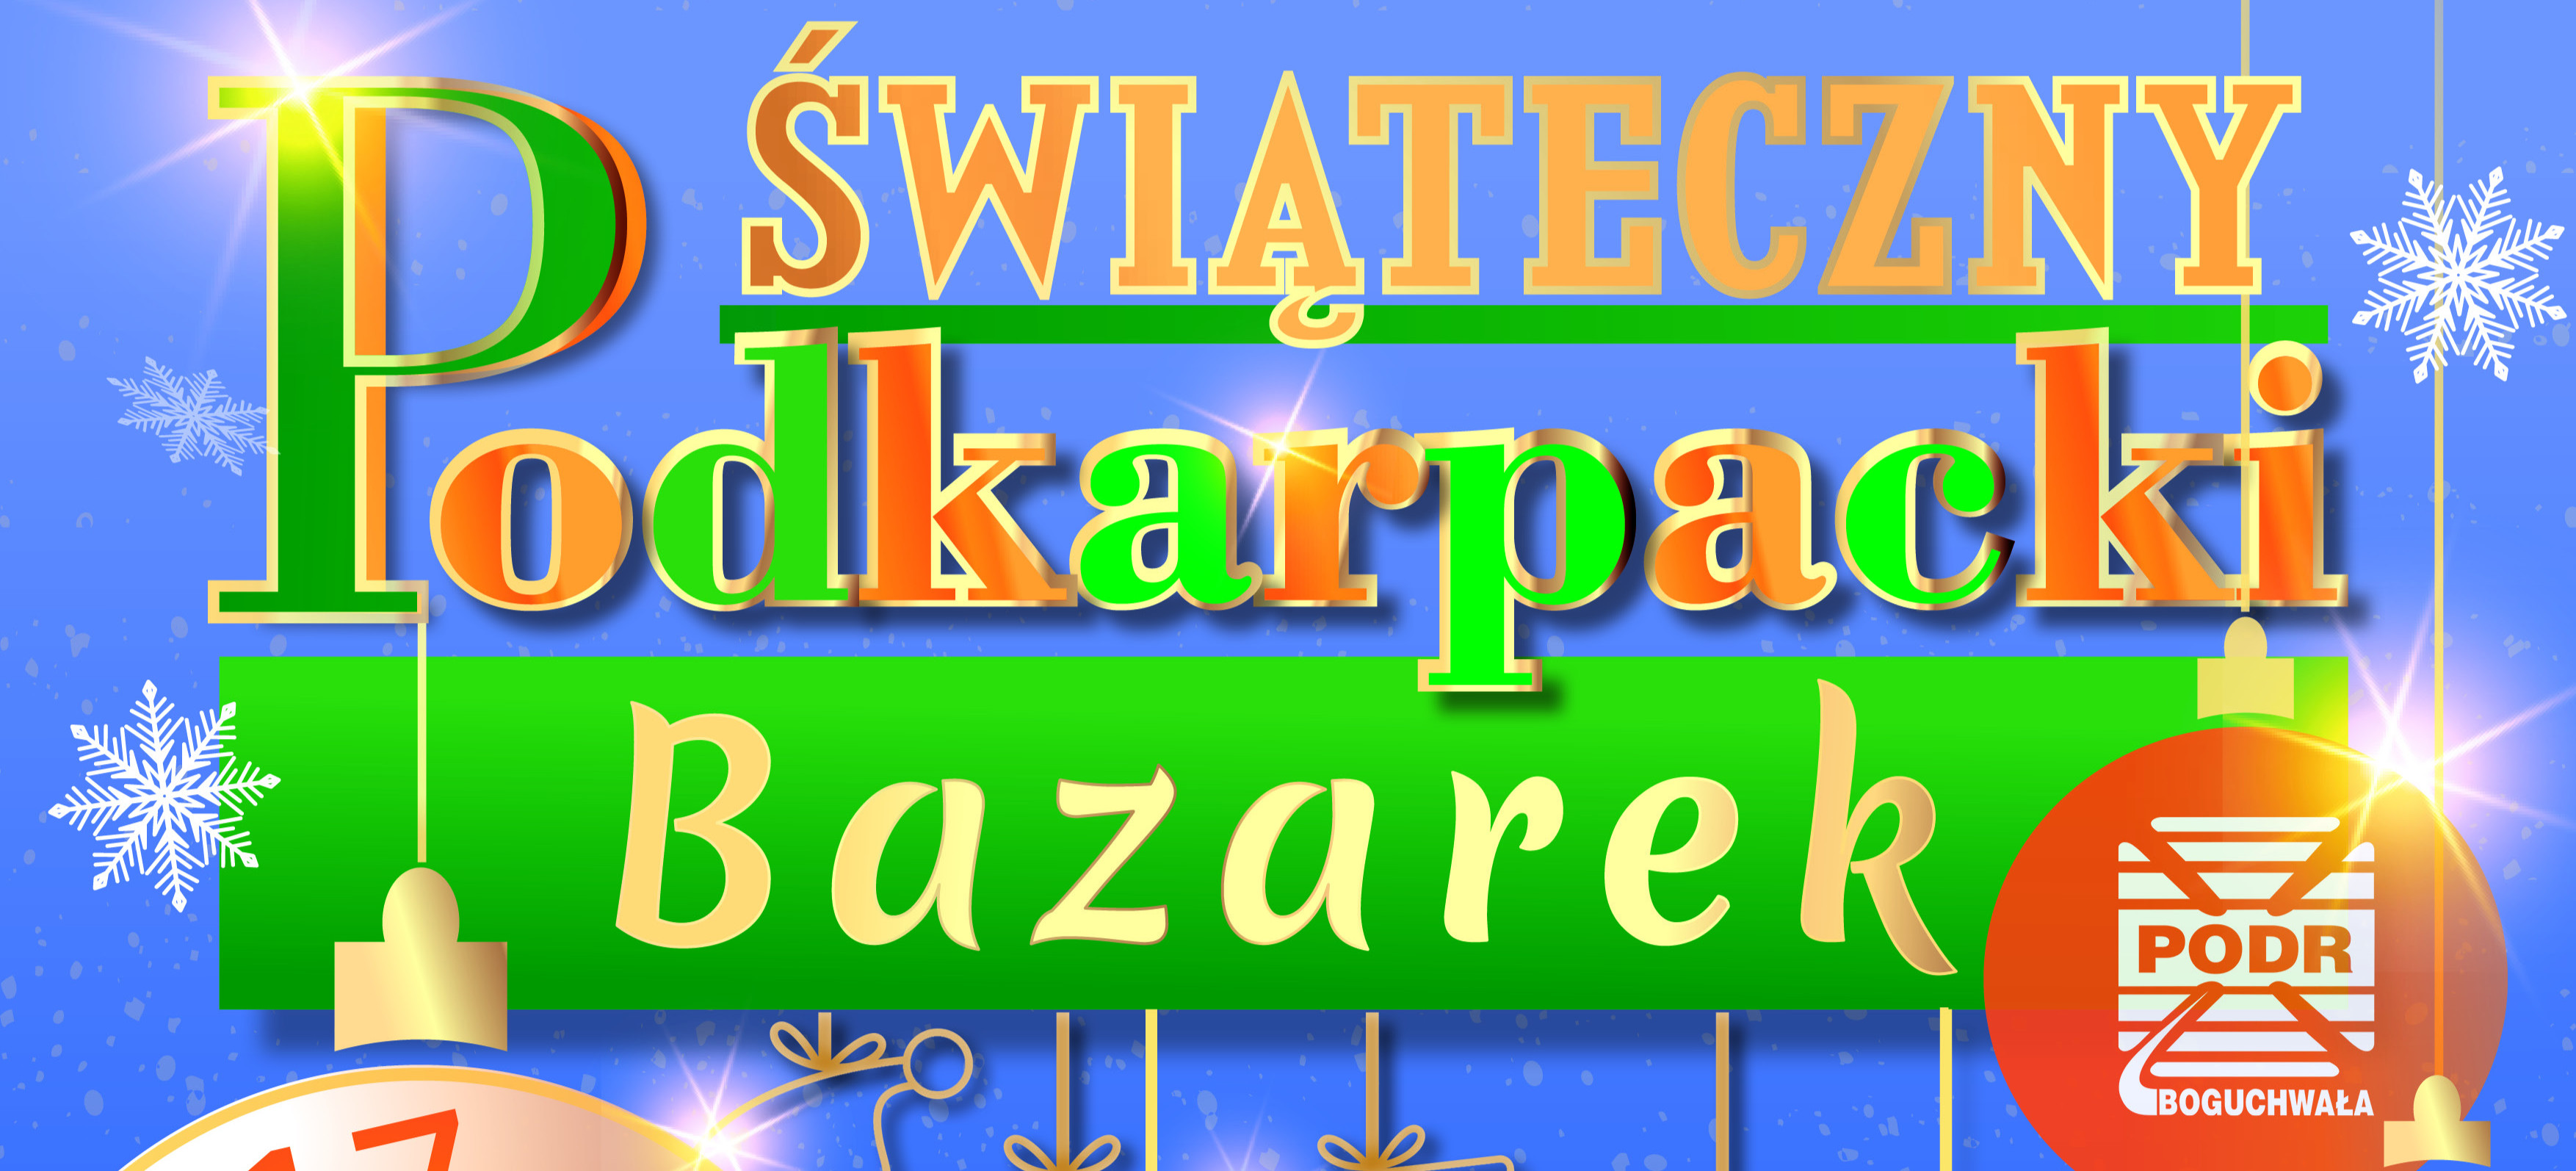 Świąteczny Podkarpacki Bazarek! Święty Mikołaj, żywa szopka, konkursy!